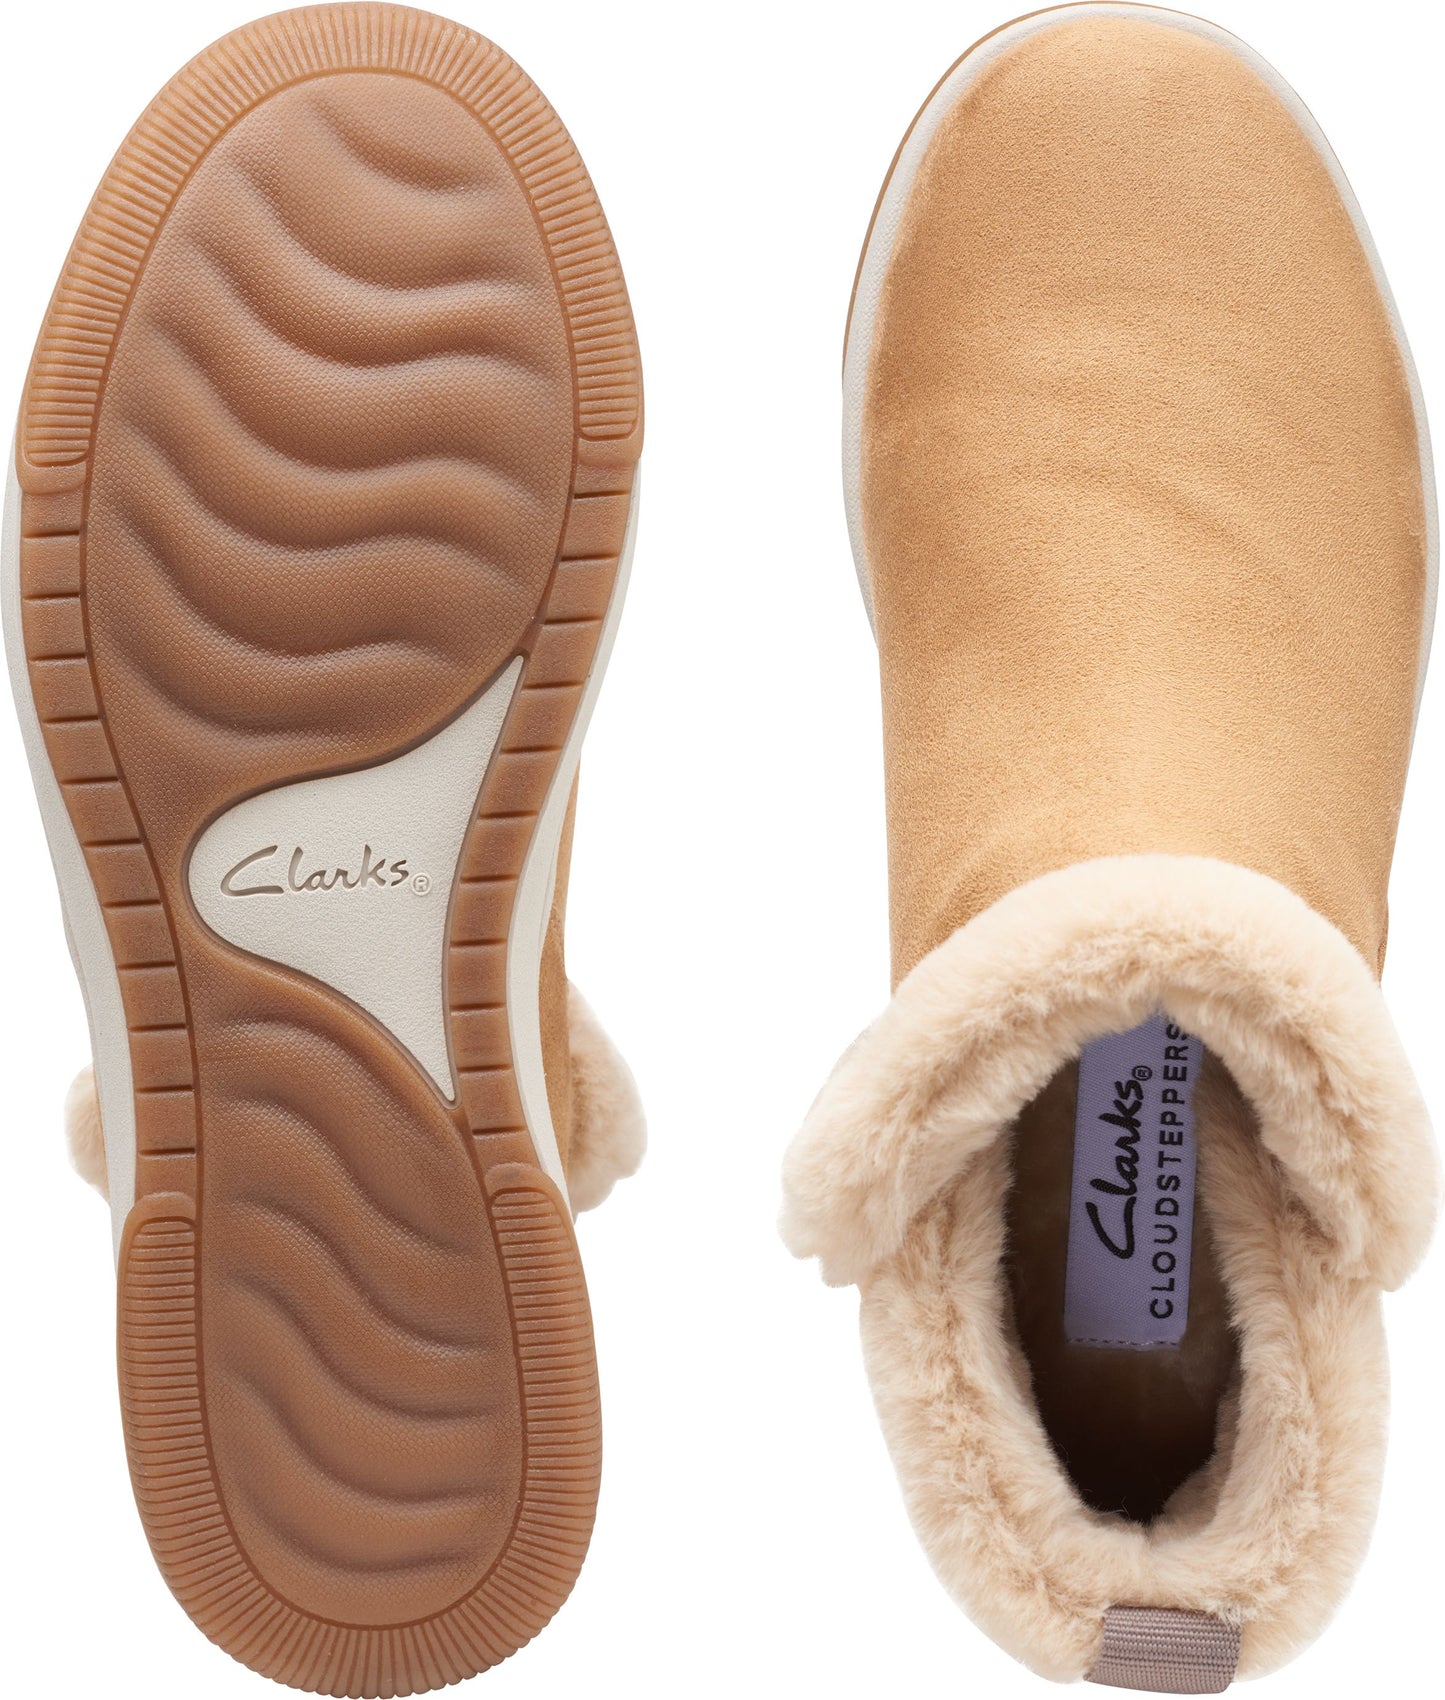 Clarks Boots Breeze Fur Tan